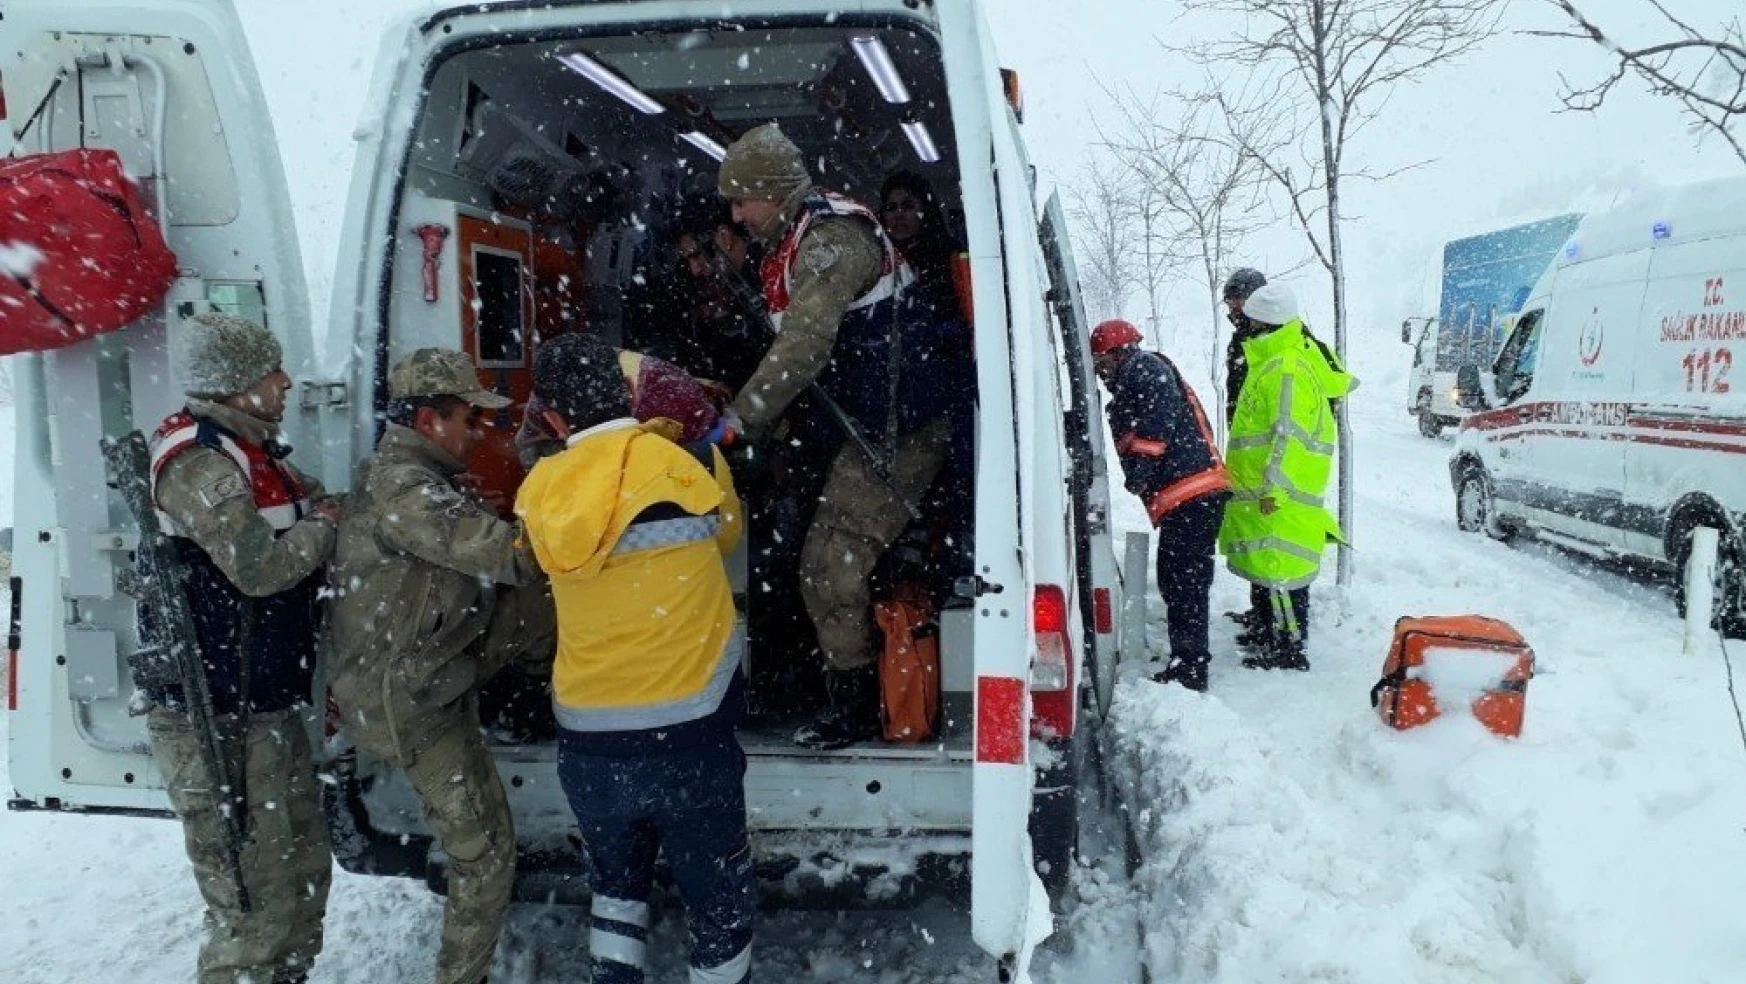 Malatya'da ambulans ile kamyonet çarpıştı: 4 yaralı